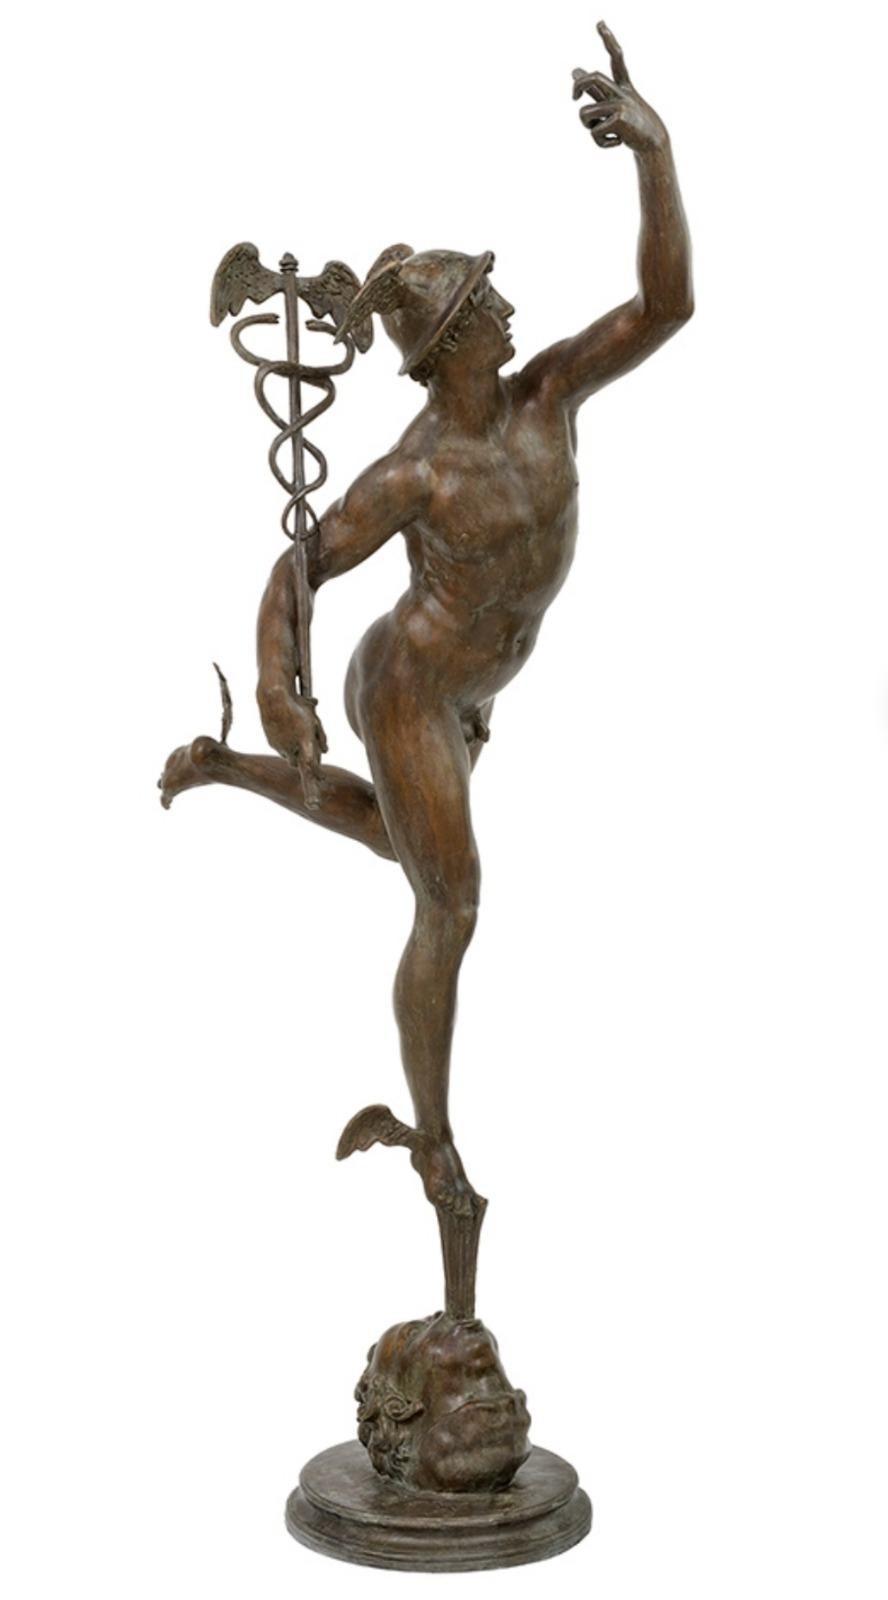 Etonnante sculpture de Mercure en bronze H : 190cm 20ème siècle
Reproduction en cire perdue et en bronze patiné de la sculpture de Mercure de Giambologna. 
L'original est exposé au musée du Bargello à Florence.
Matériau : Bronze
Technique : Cire